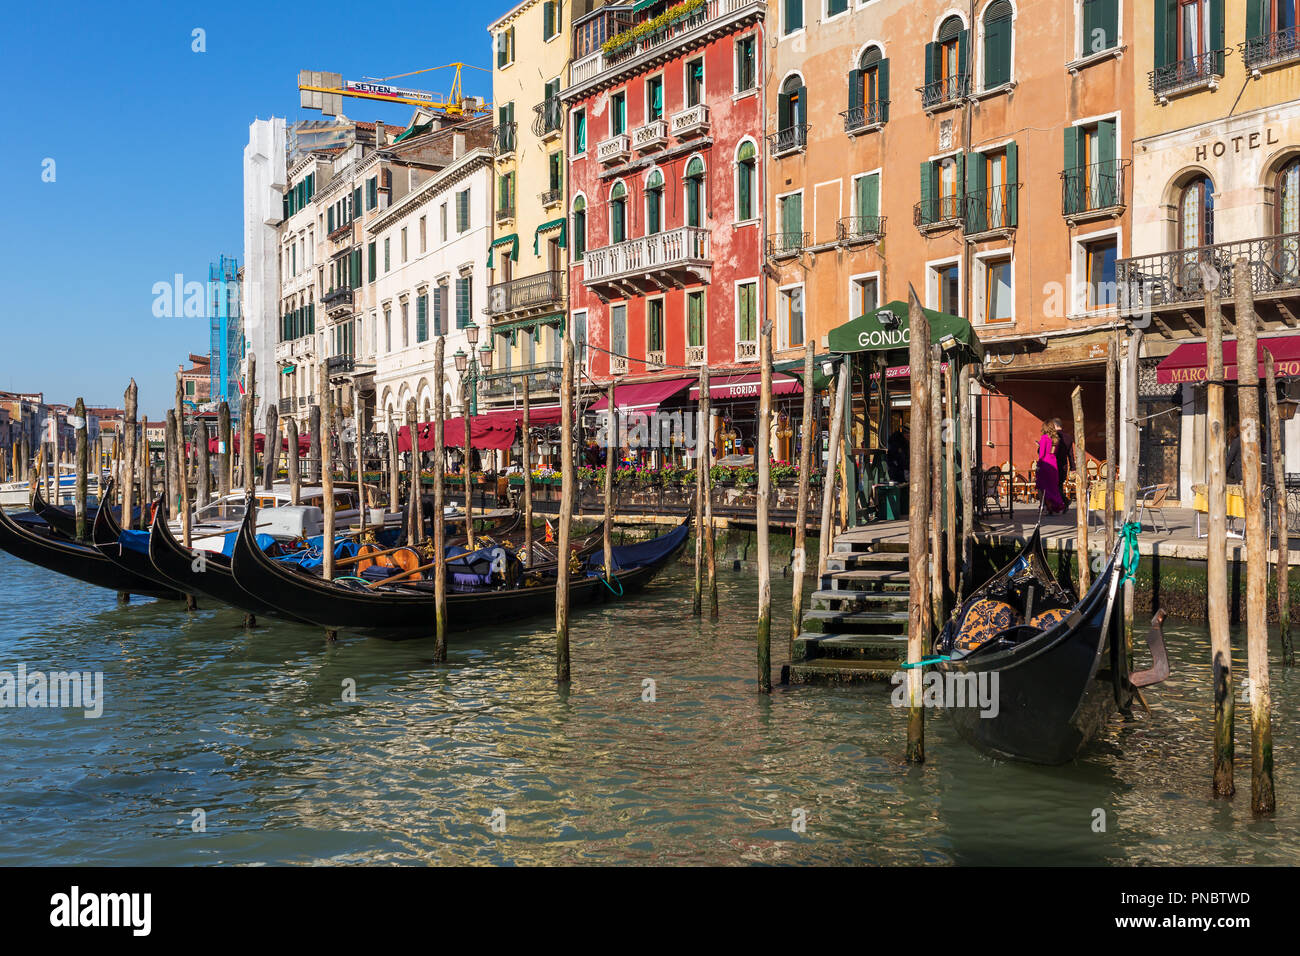 Venise, Italie - 22 mars 2018 : parking télécabine au Grand Canal de Venise, Italie Banque D'Images